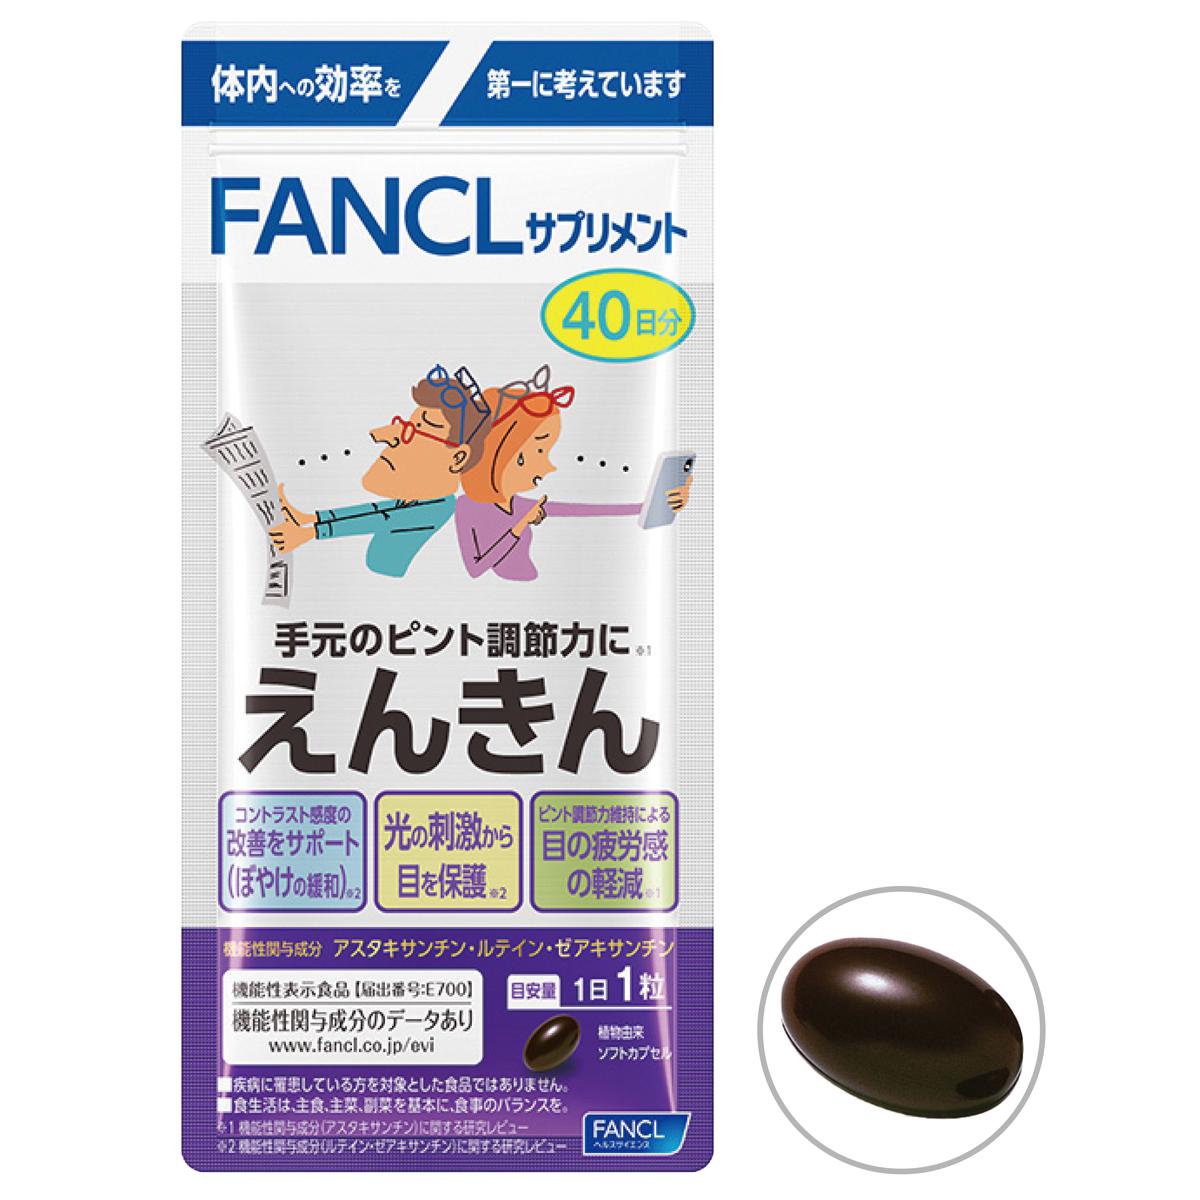 ファンケル えんきん - 美容・健康商品の通販ならセシール(cecile)